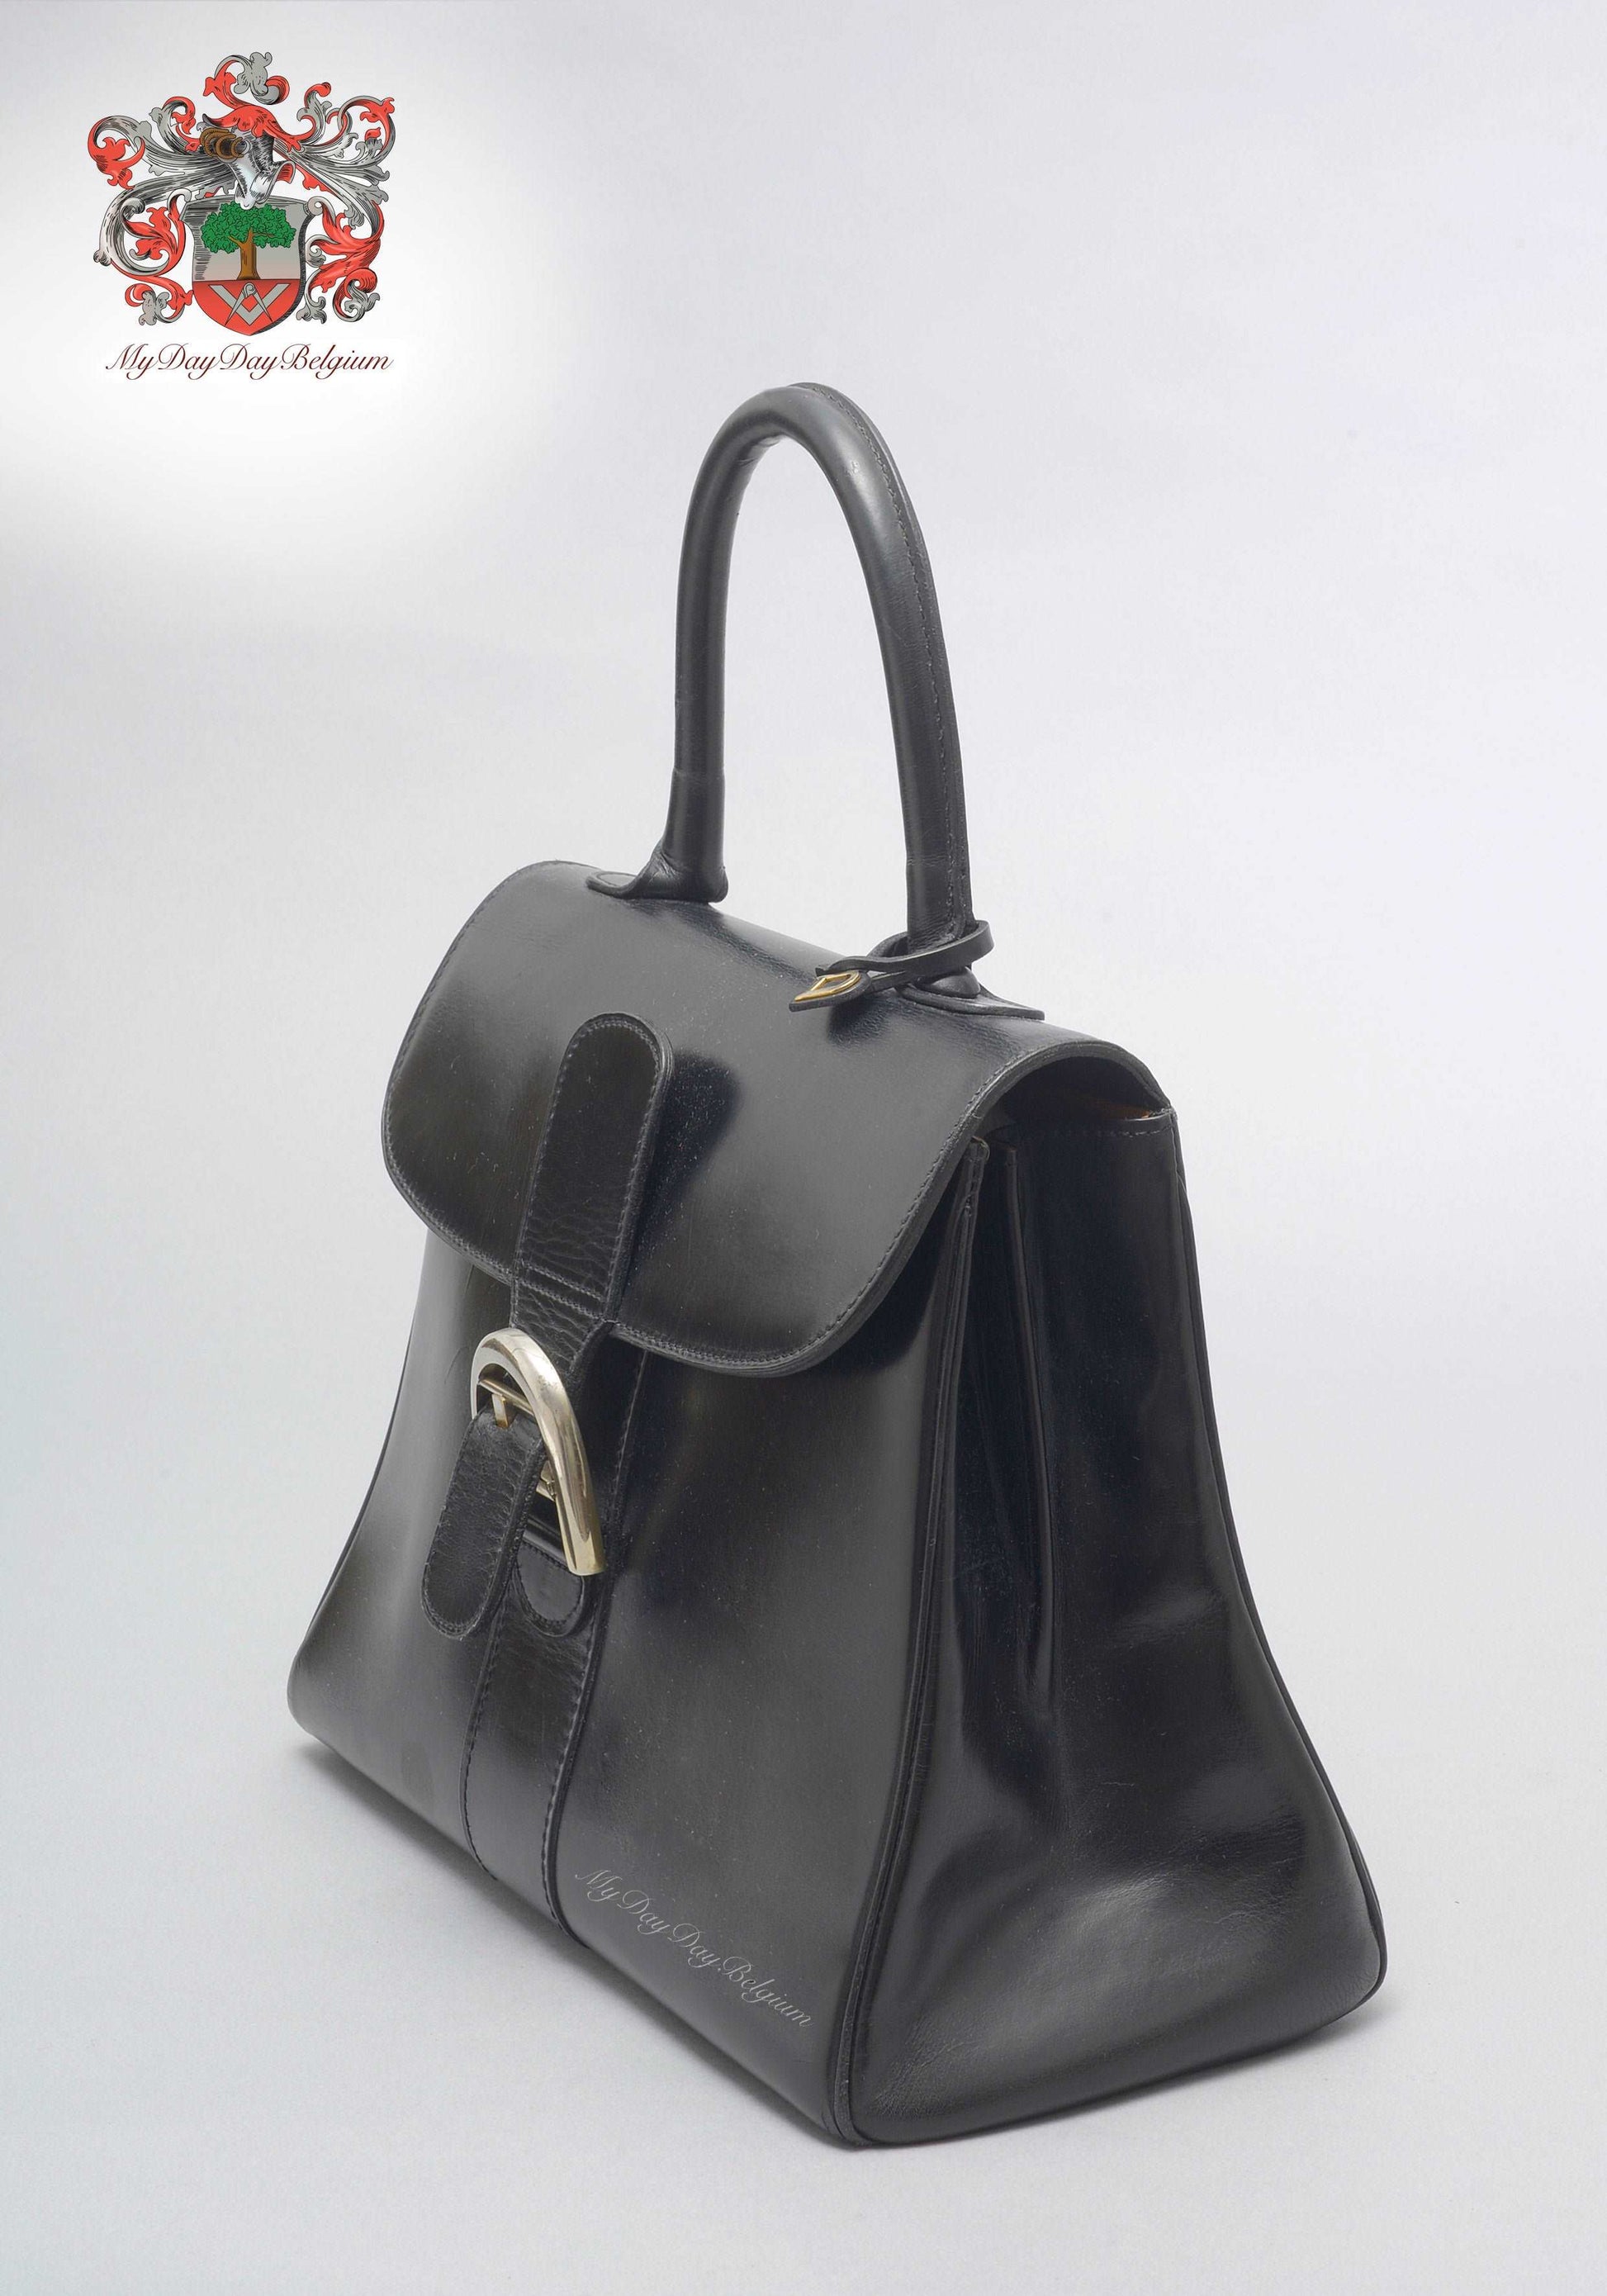 Delvaux Brillant L'xxl Bag - Black Totes, Bags - DVX21362